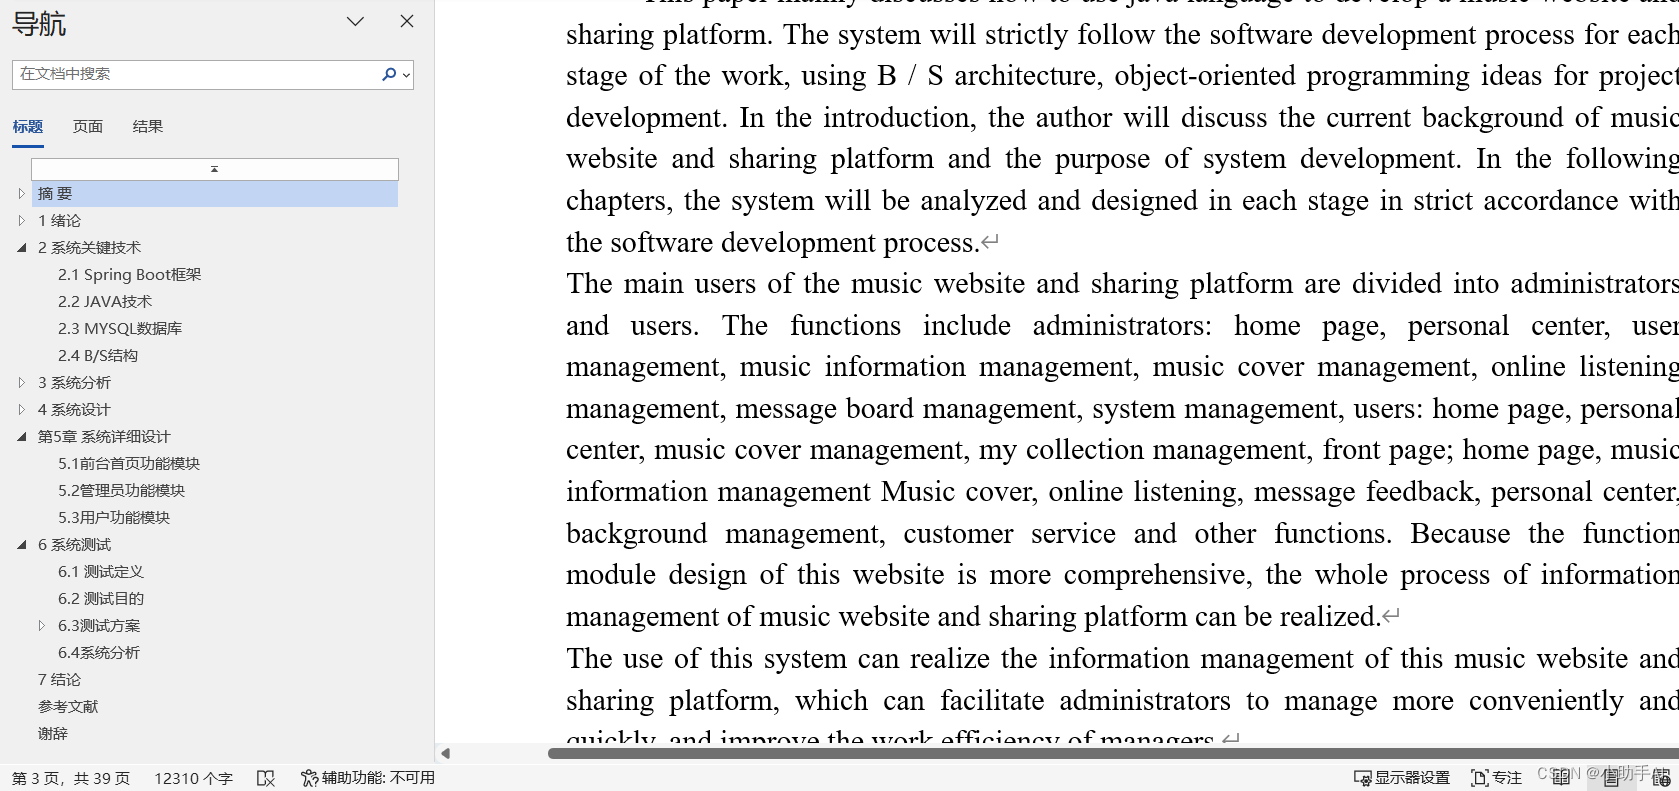 音乐网站与分享平台|基于springboot框架+ Mysql+Java+B/S结构的音乐网站与分享平台设计与实现(可运行源码+数据库+设计文档)